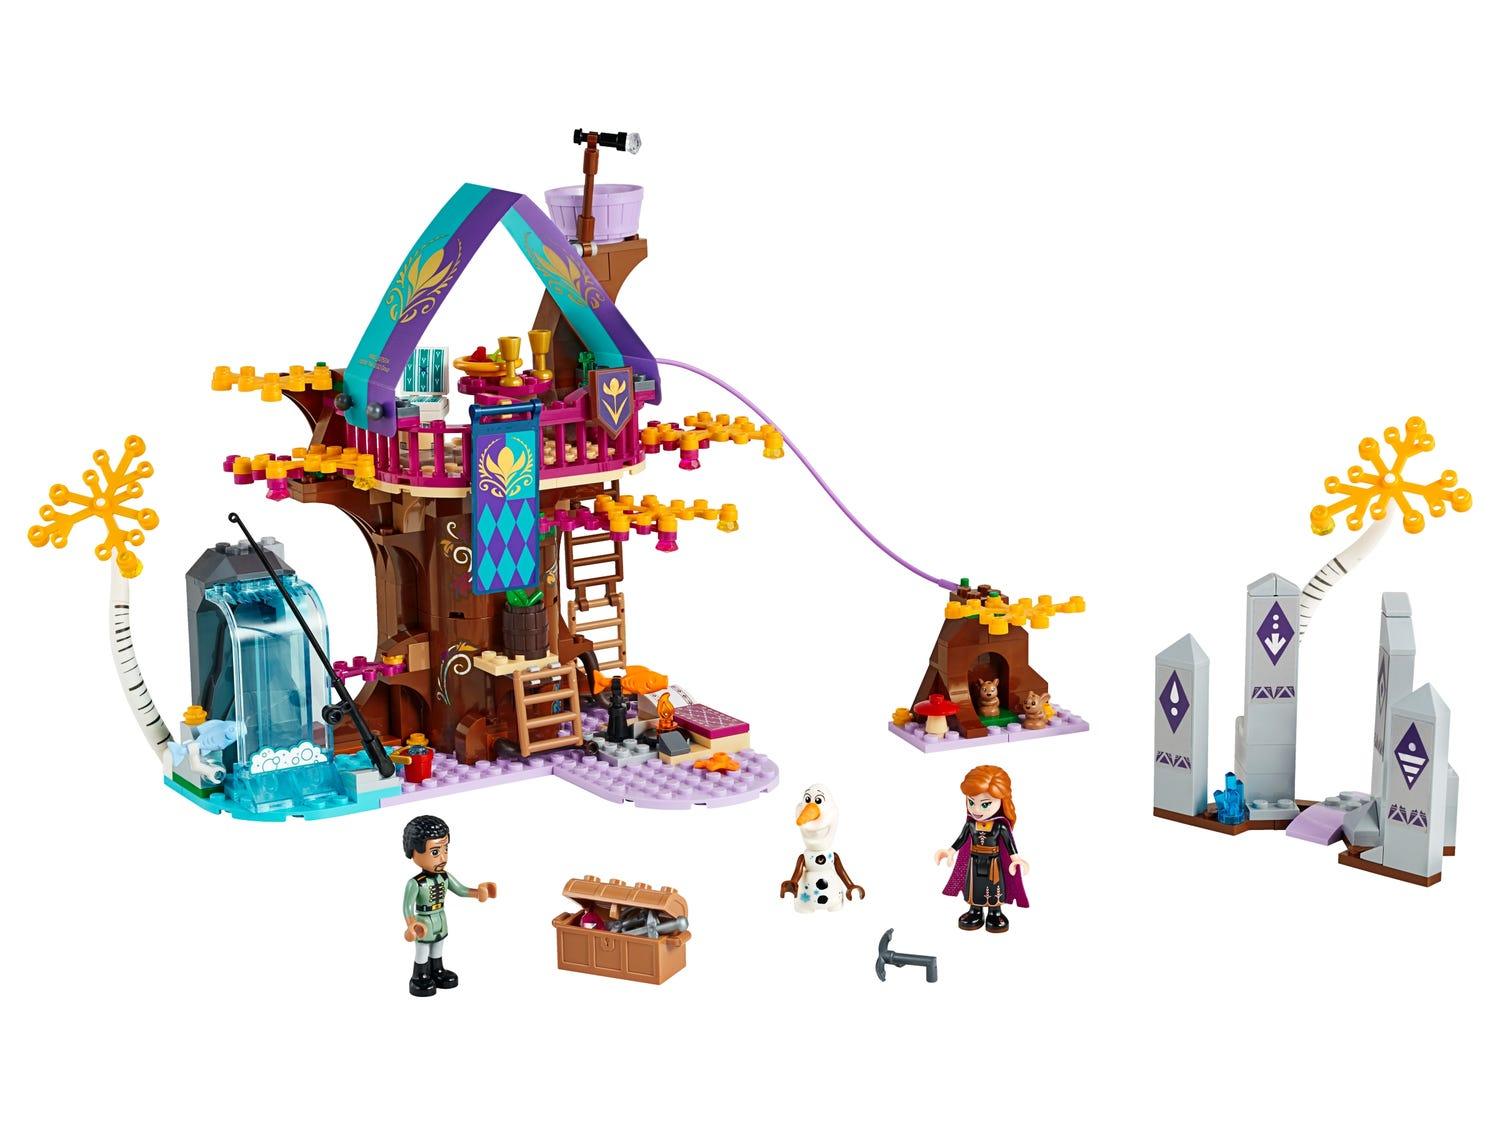 LEGO Frozen Betoverd boomhuis 41164 Disney | 2TTOYS ✓ Official shop<br>